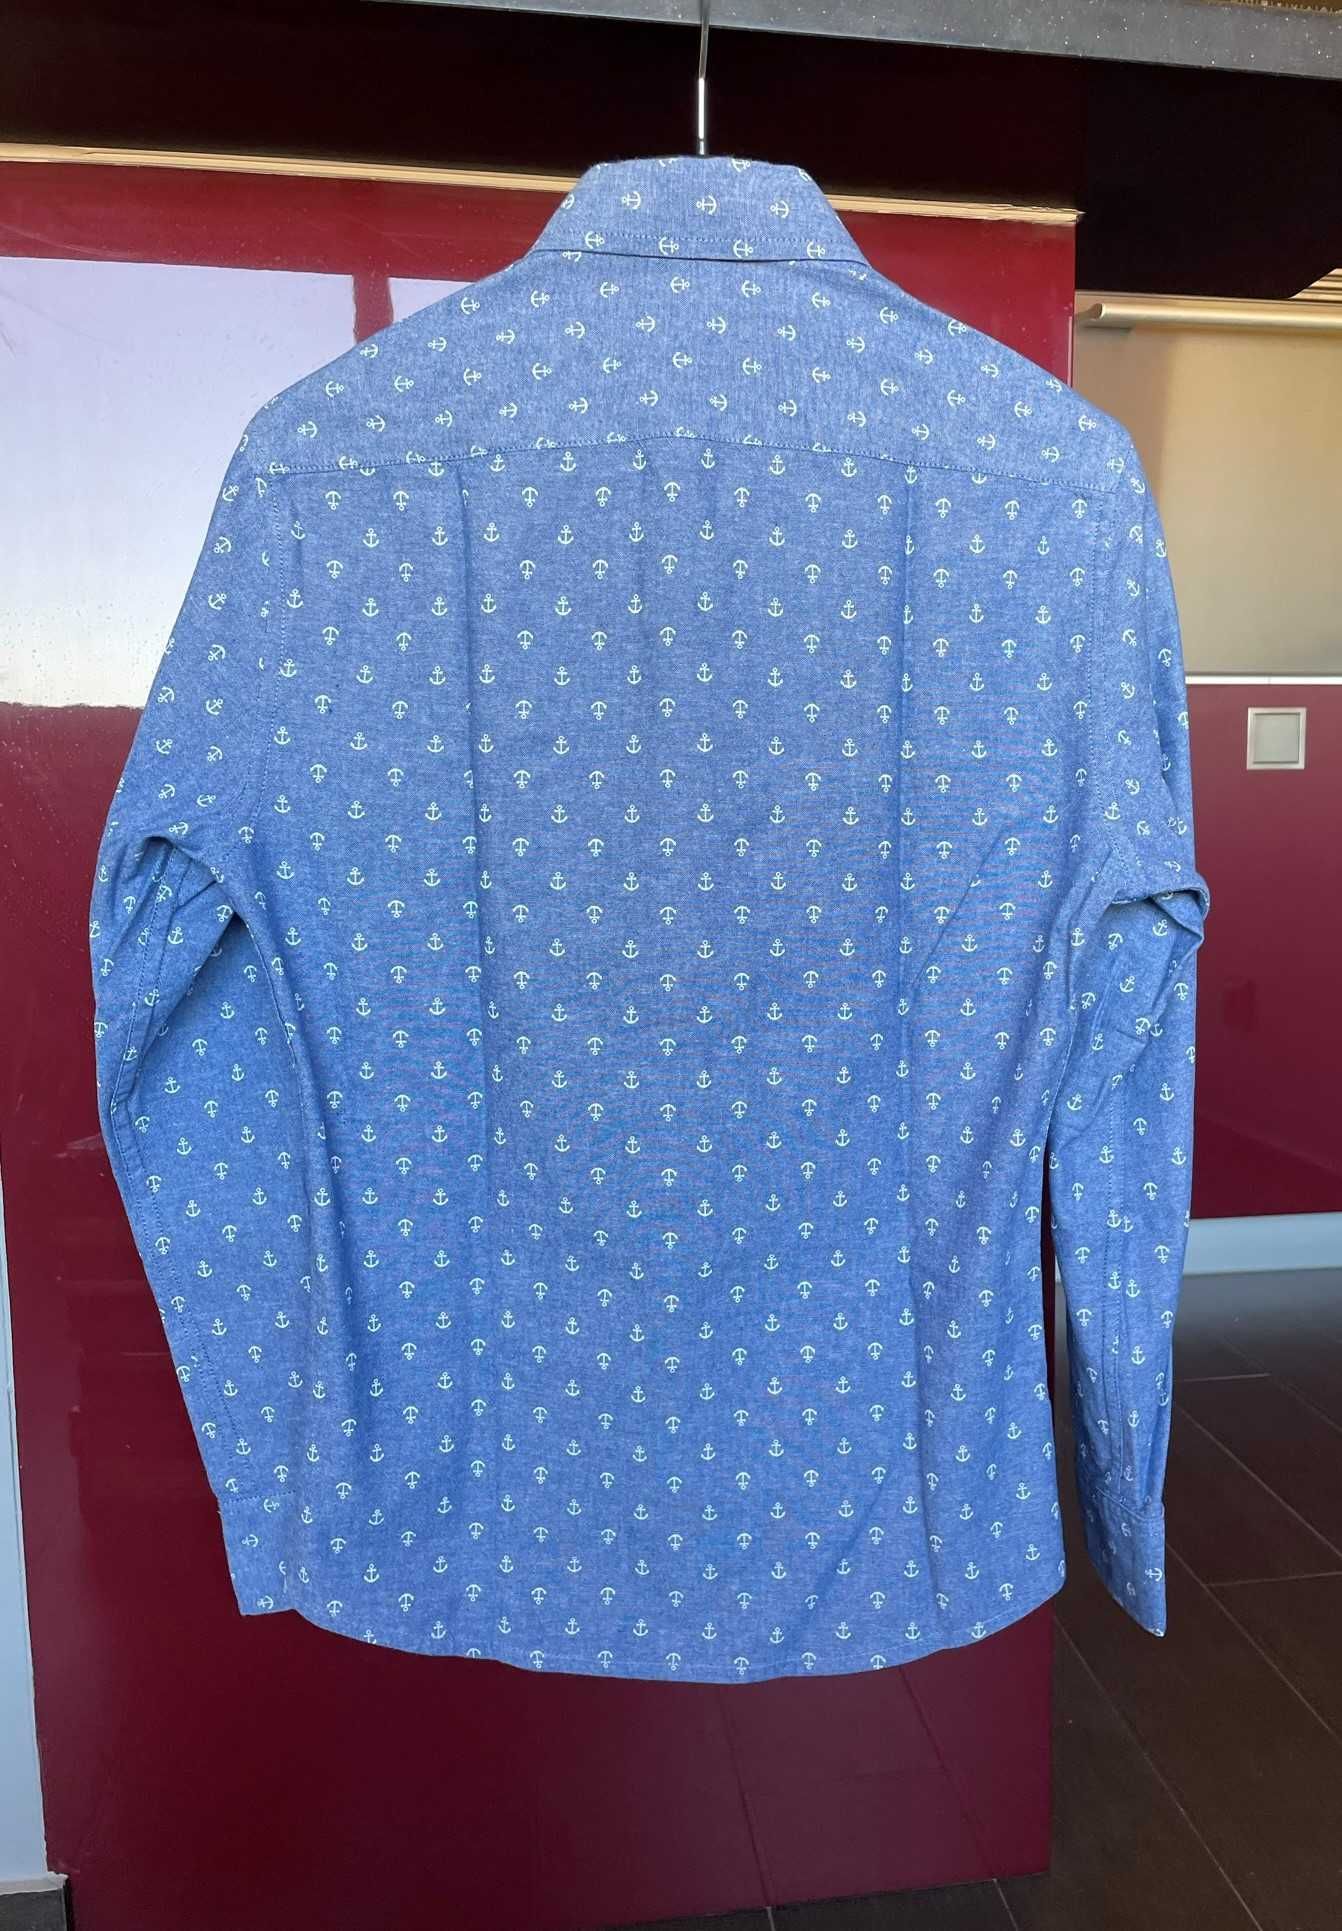 Camisa slim fit azul estampada com âncoras brancas - XS